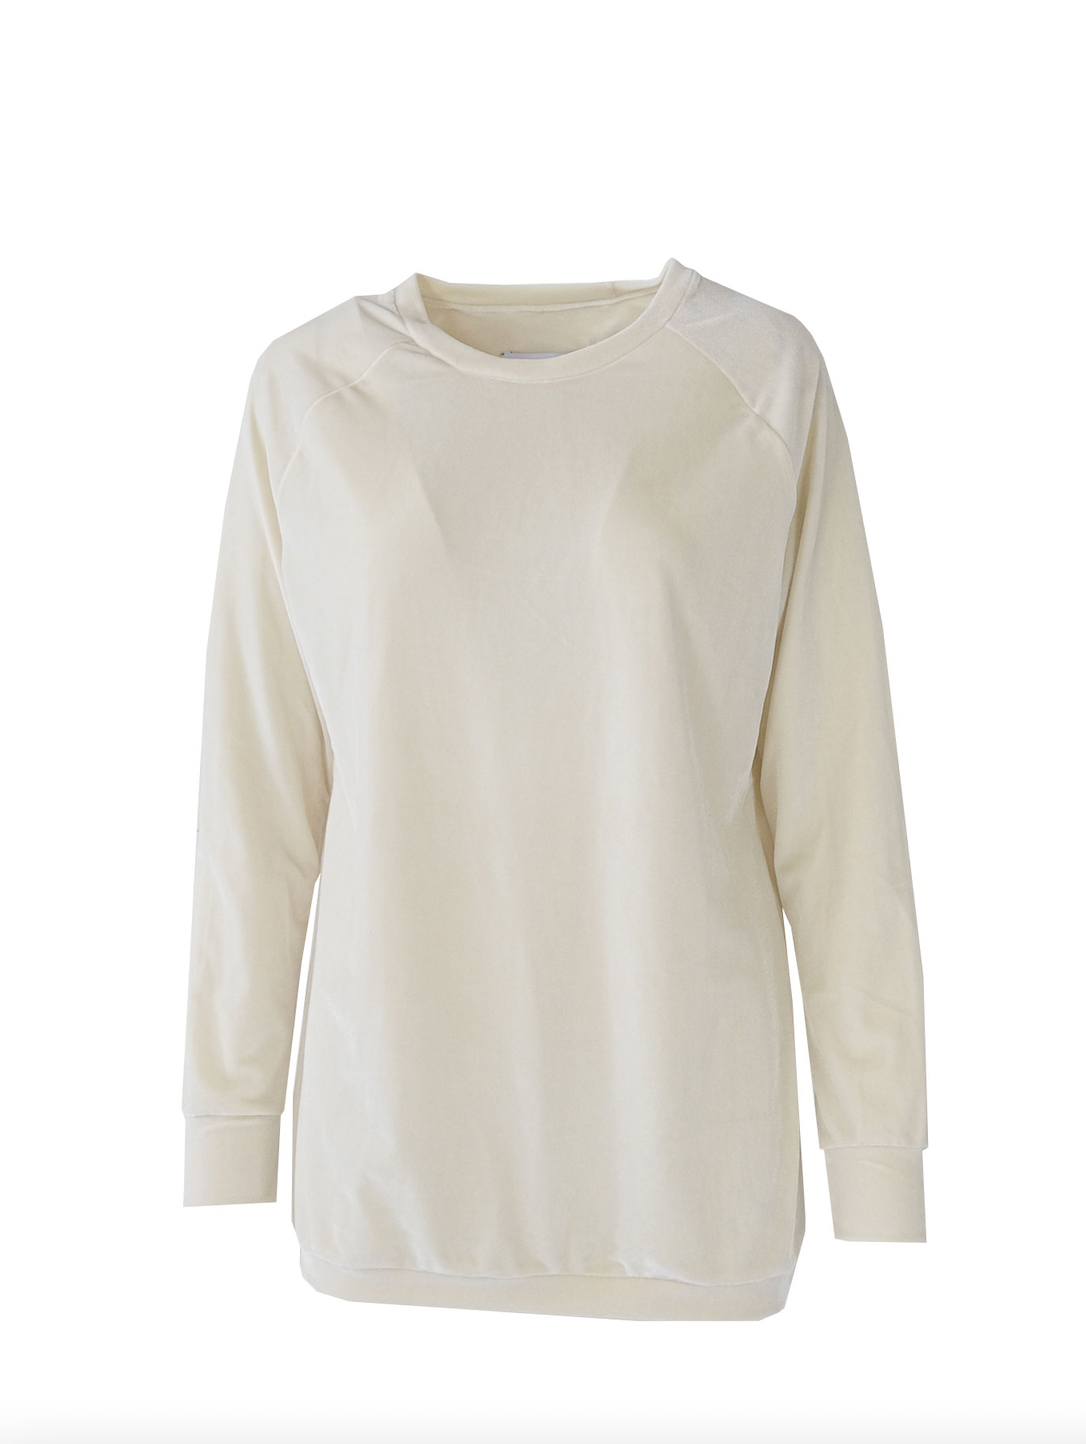 FLORA - corduroy sweatshirt in cream